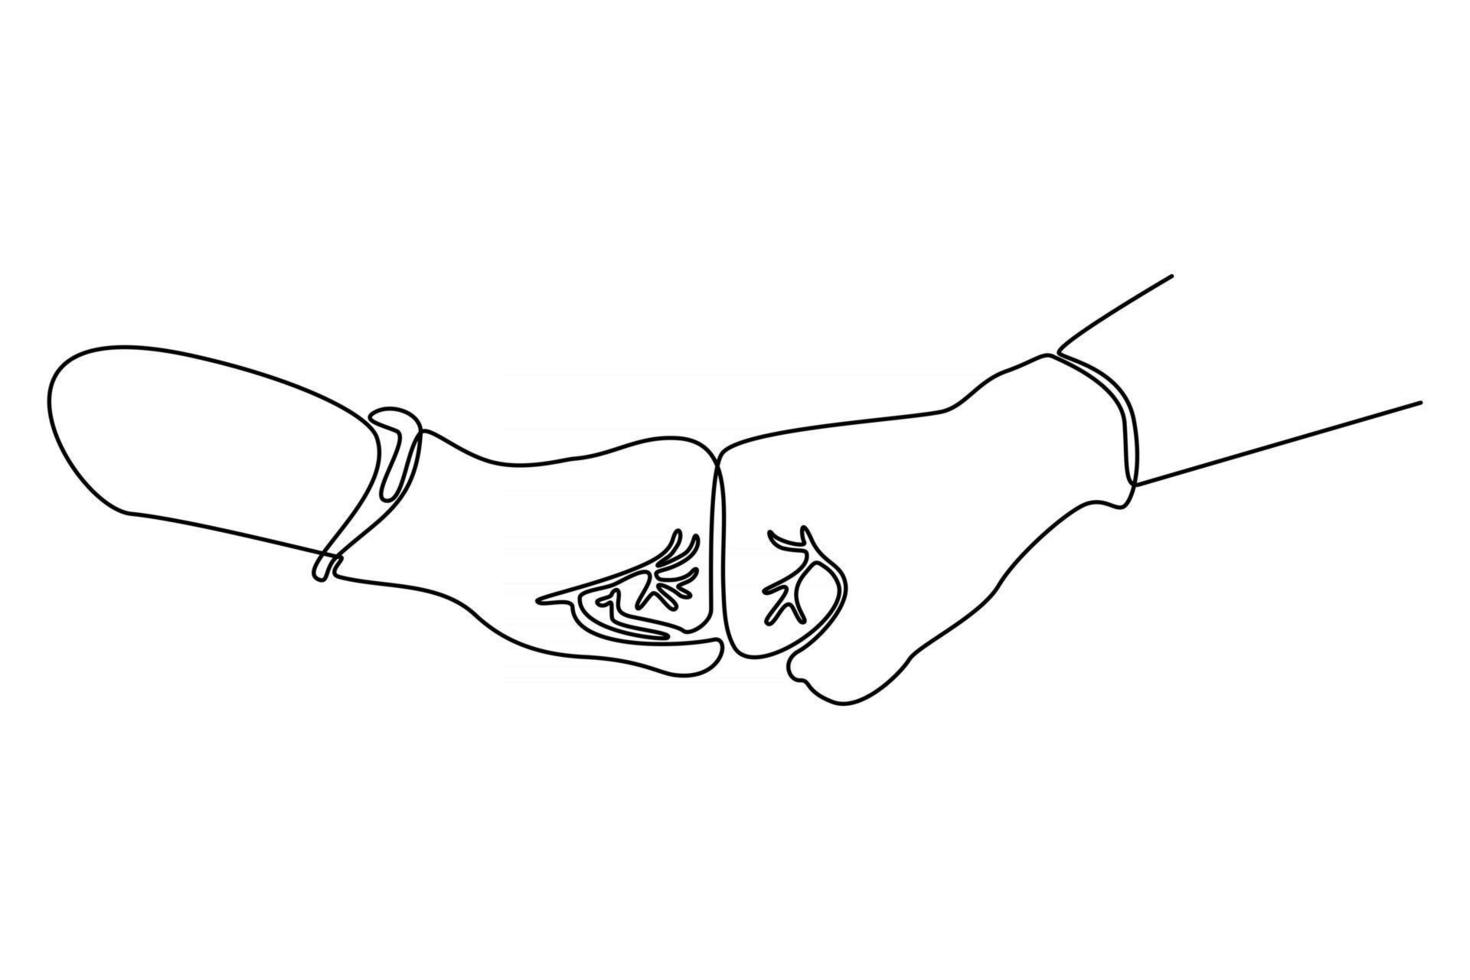 ligne continue de deux mains avec des gants de protection contre le virus corona illustration vectorielle vecteur